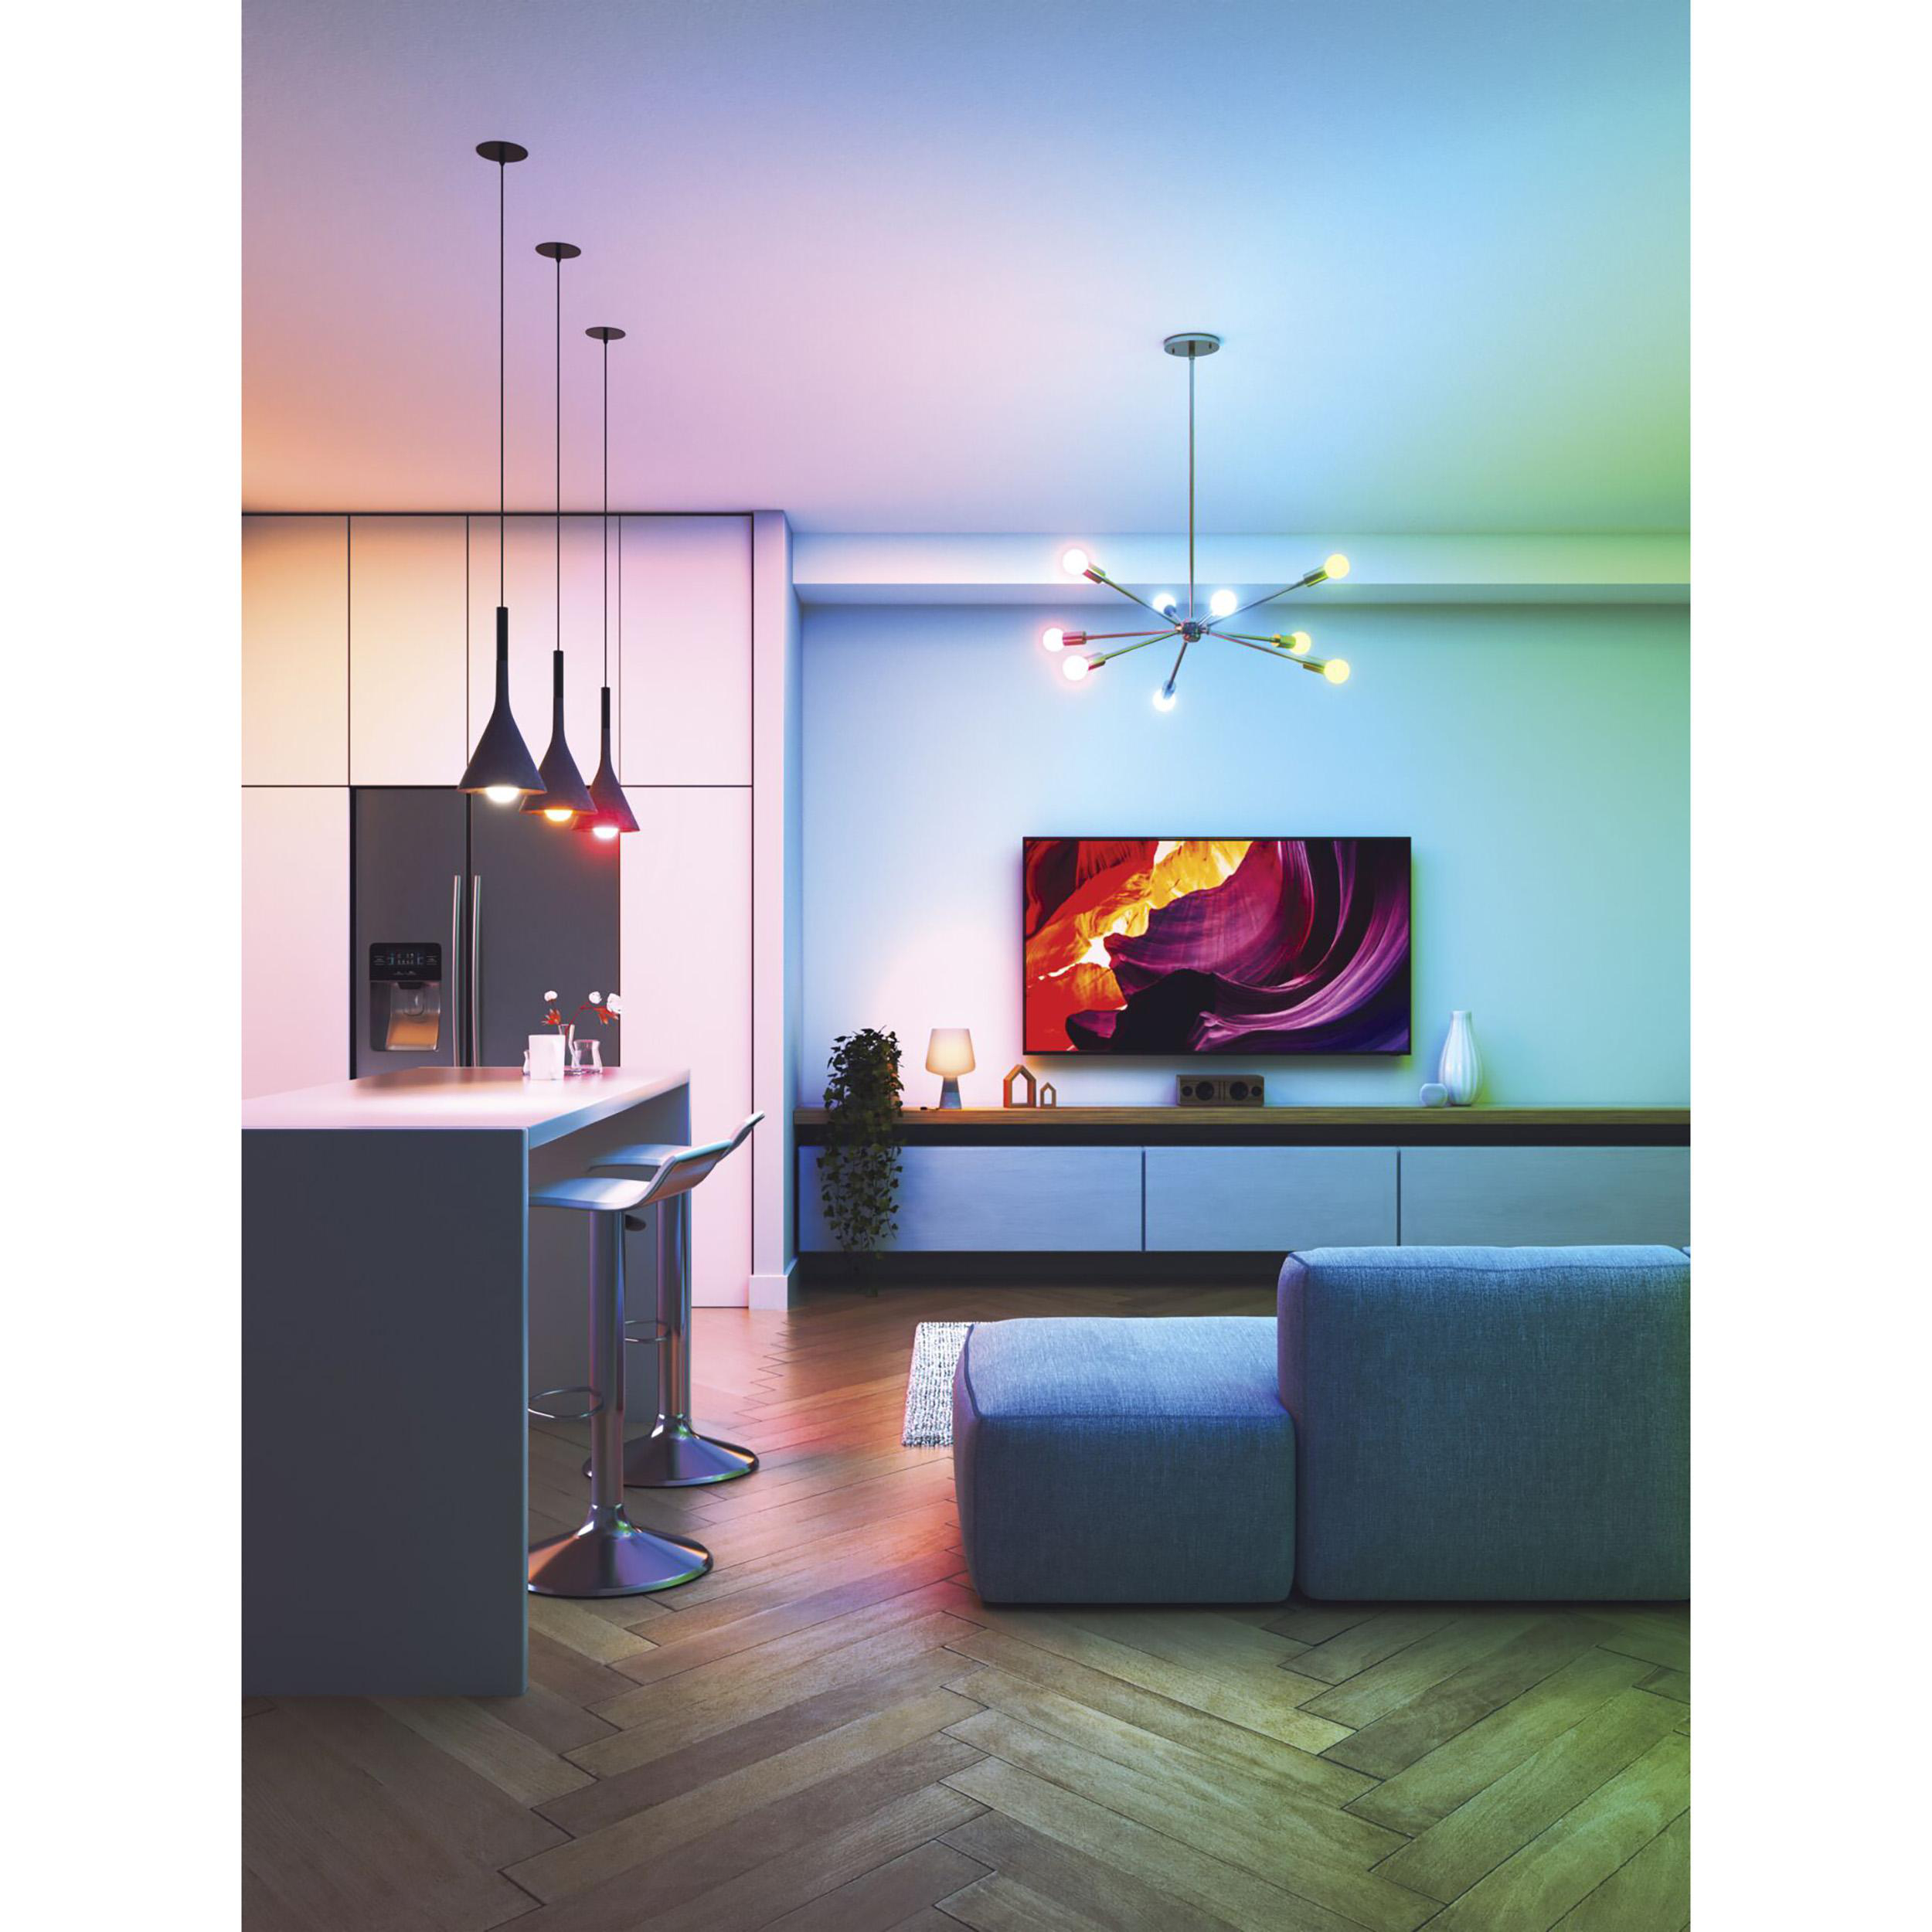 NANOLEAF Essentials Matter Smart Bulb Glühbirne Pack 3er Multicolor, E27 Smarte Tageslichtweiß Warmweiß